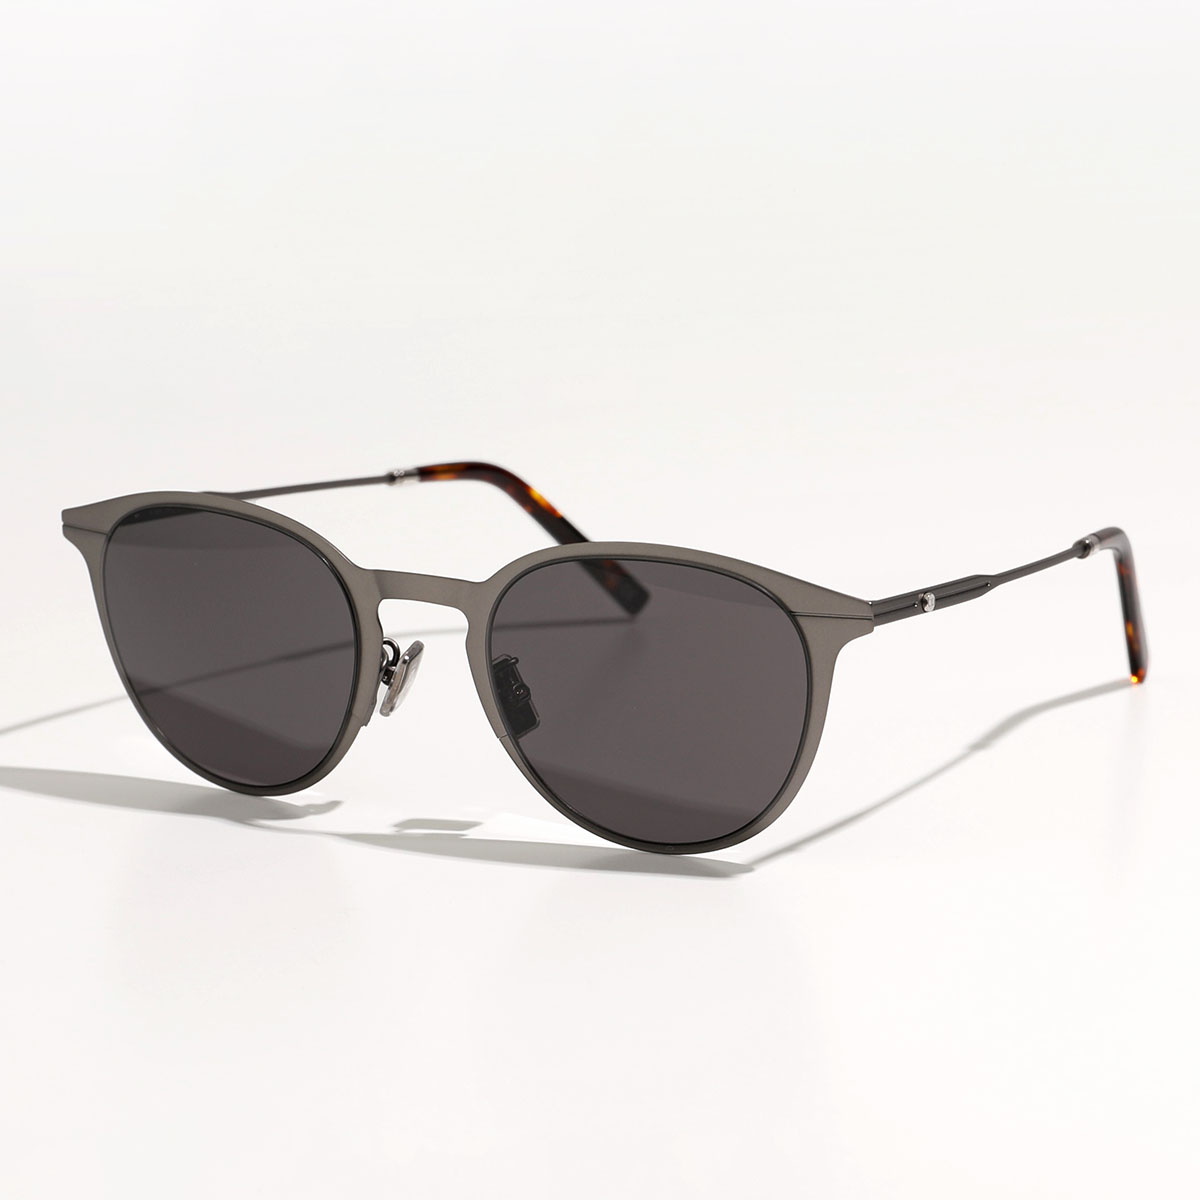 正規品の人気商品通販 Dior ディオール サングラス ESSENTIAL エッセンシャル DM40006U メンズ ボストン型 メガネ めがね 眼鏡 アイウェア カラー2色